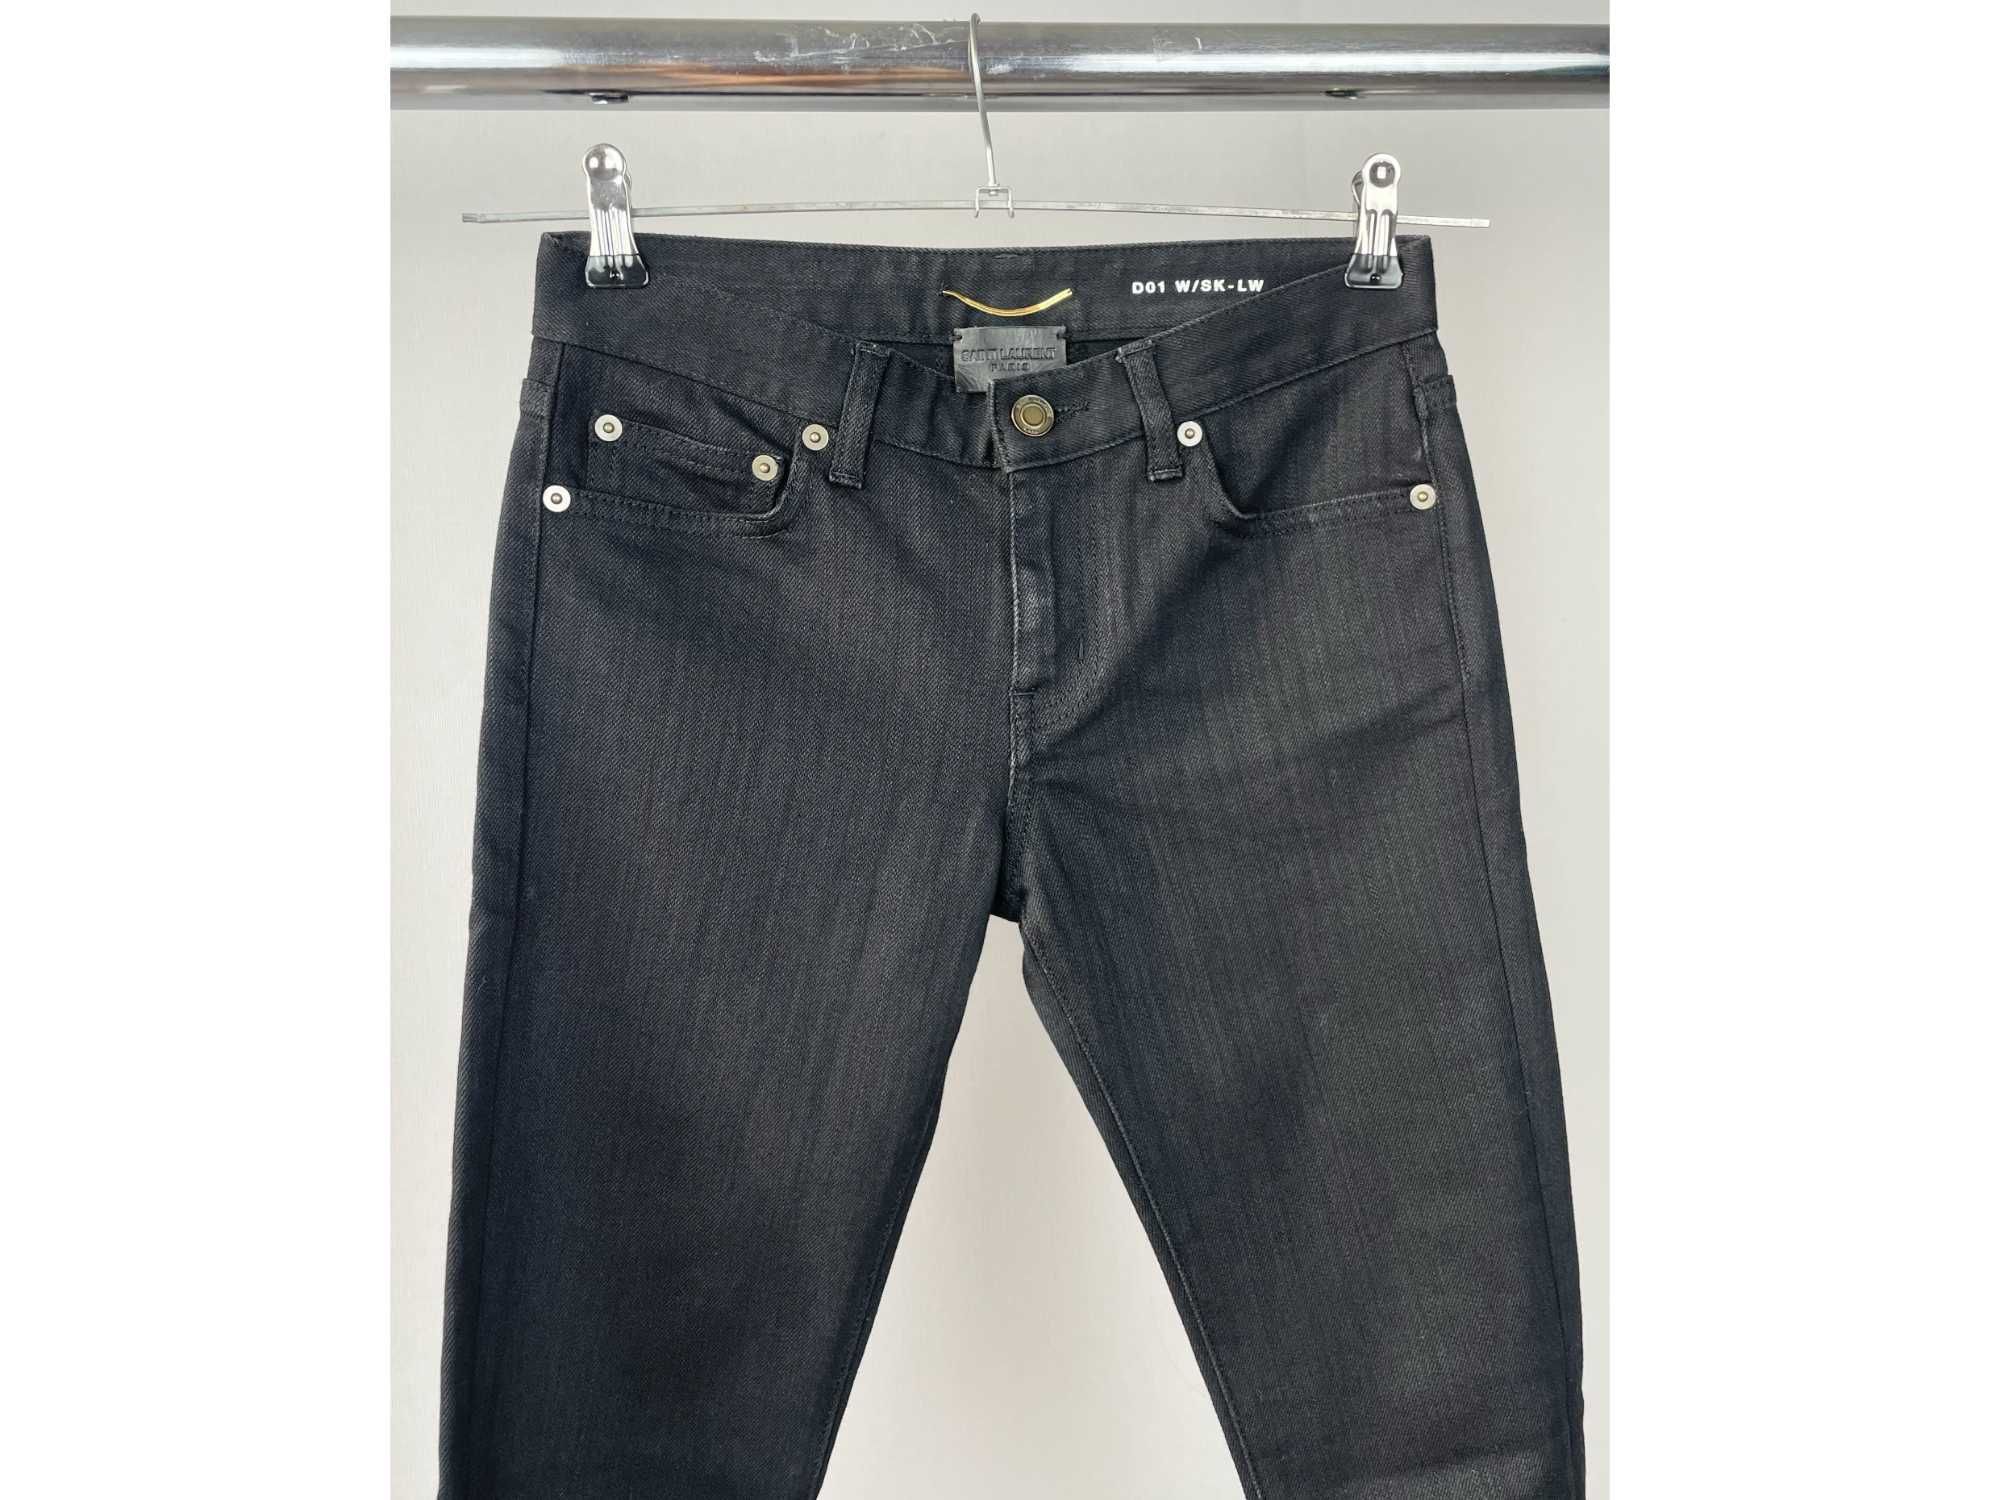 ХХС Джинси Yves Saint Laurent джинсы скинни оригинал классические